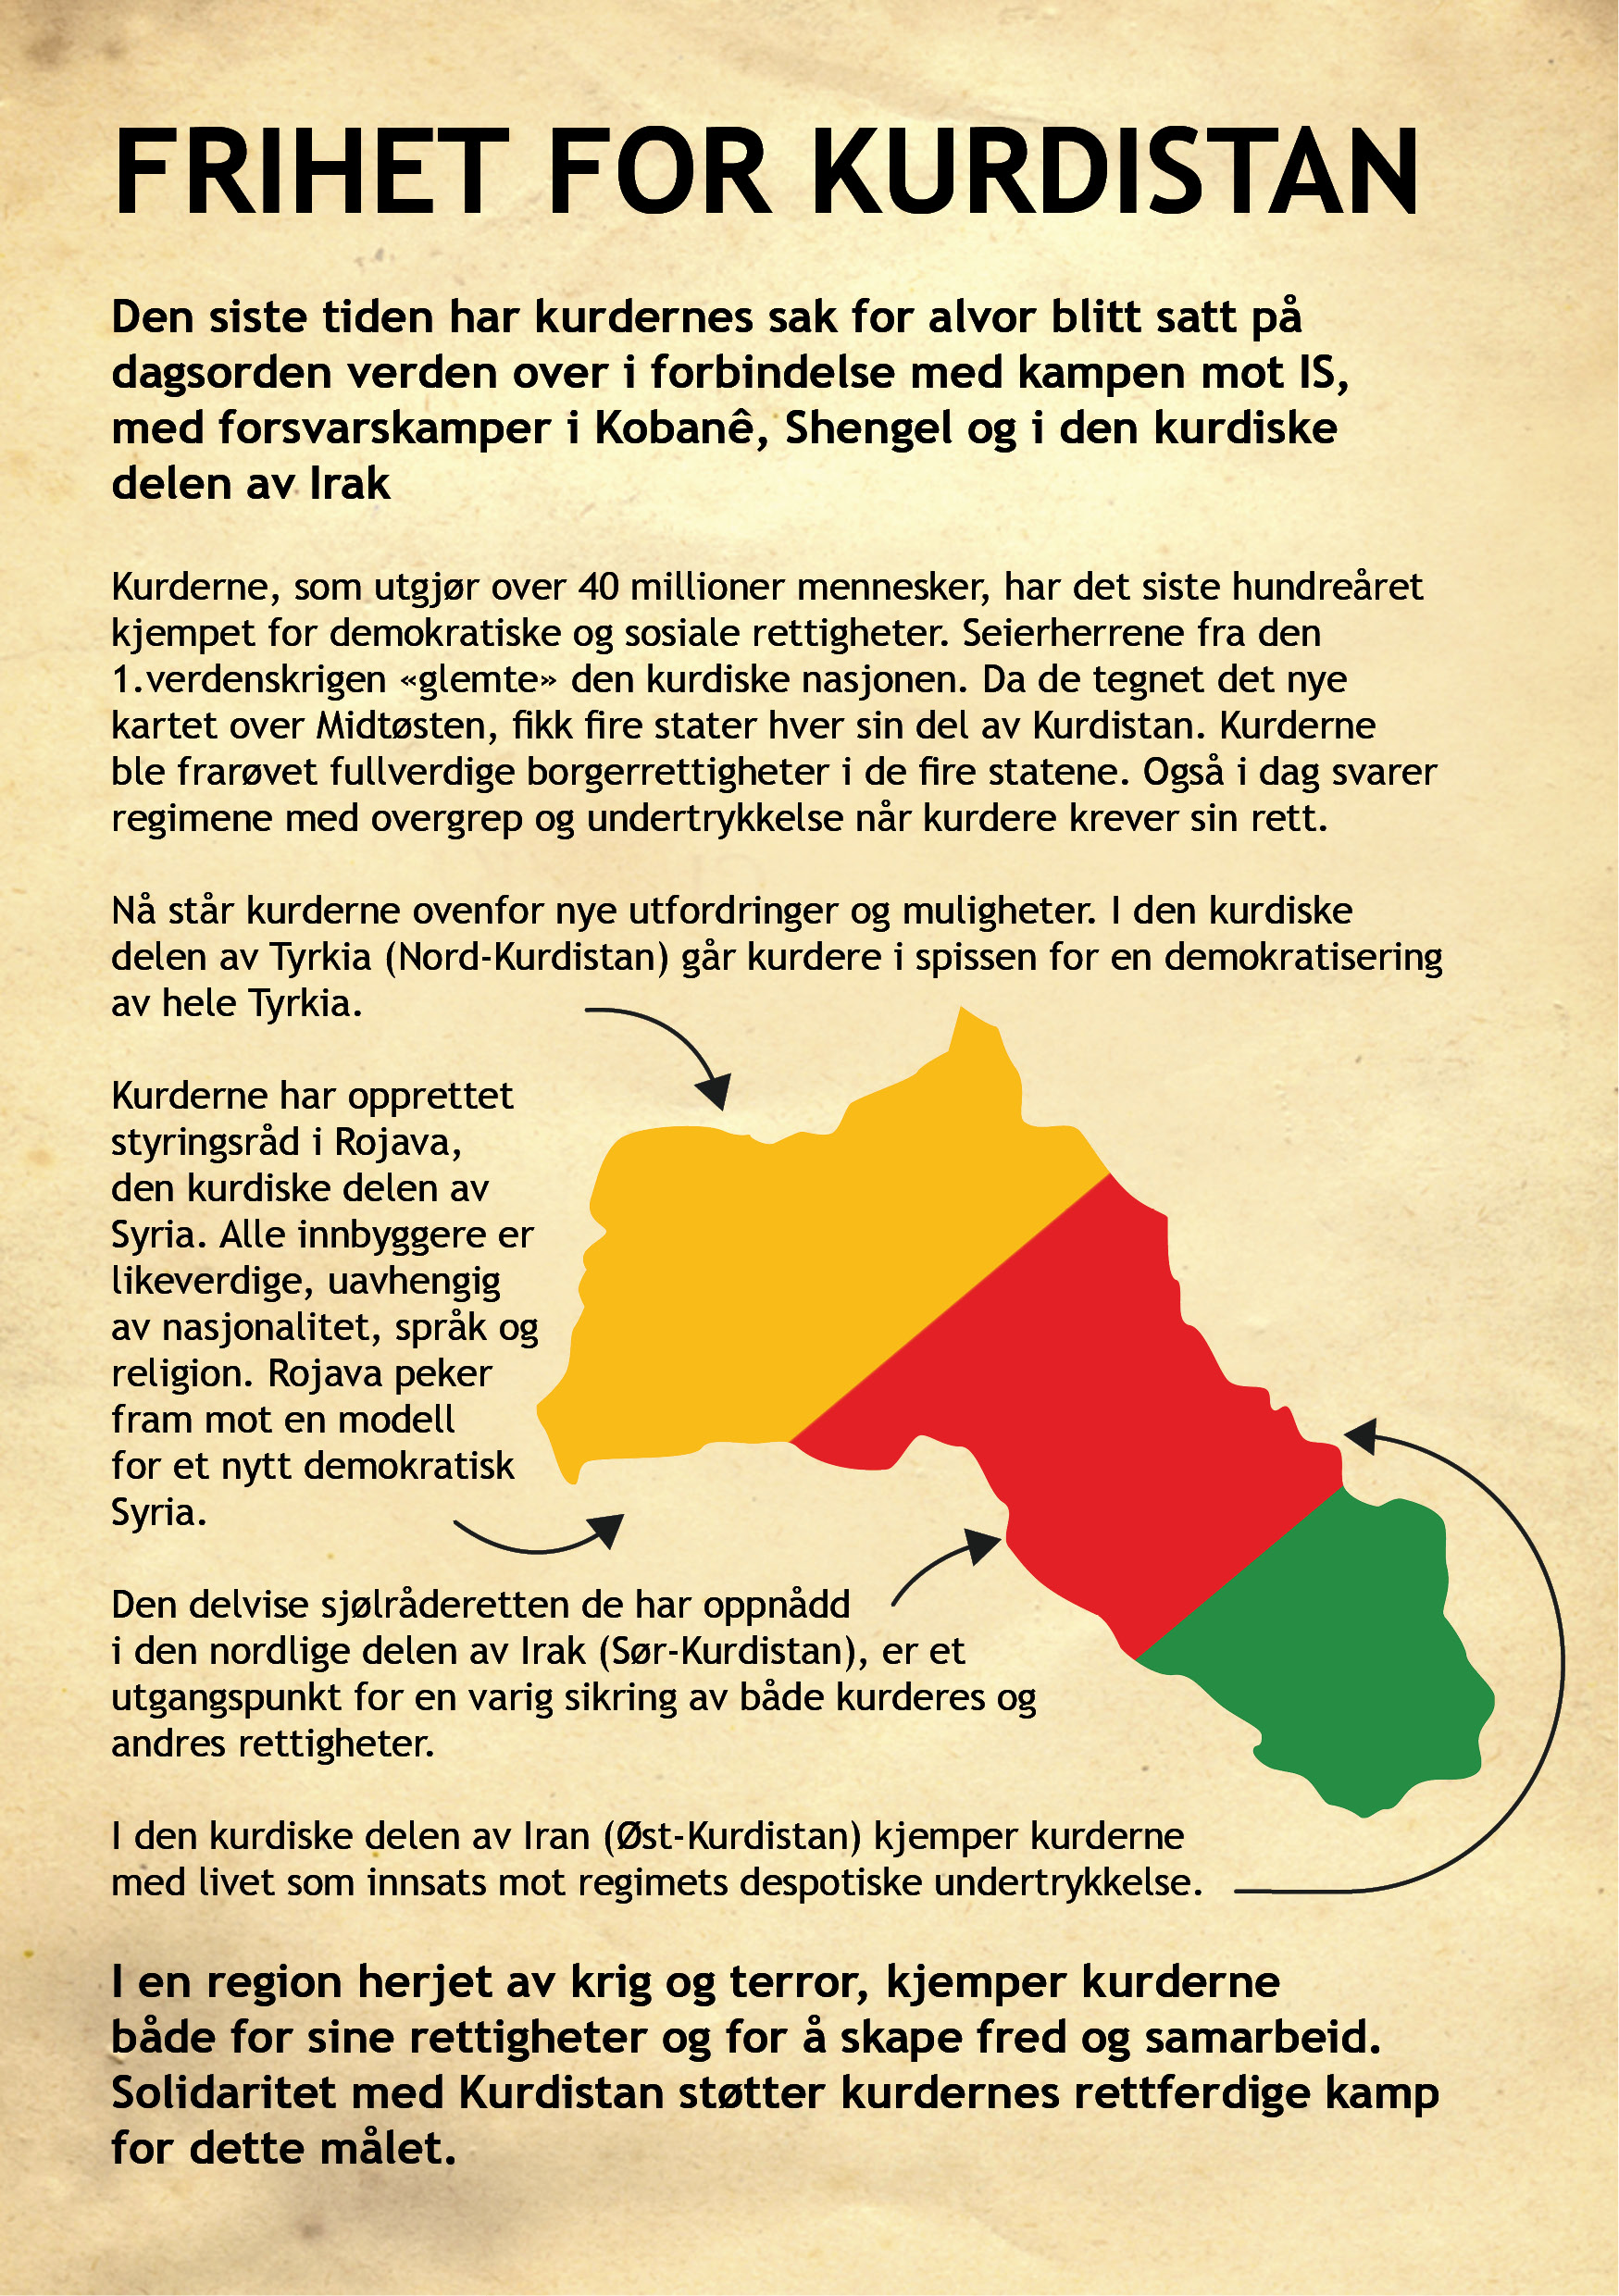 solidaritet med kurdistan now